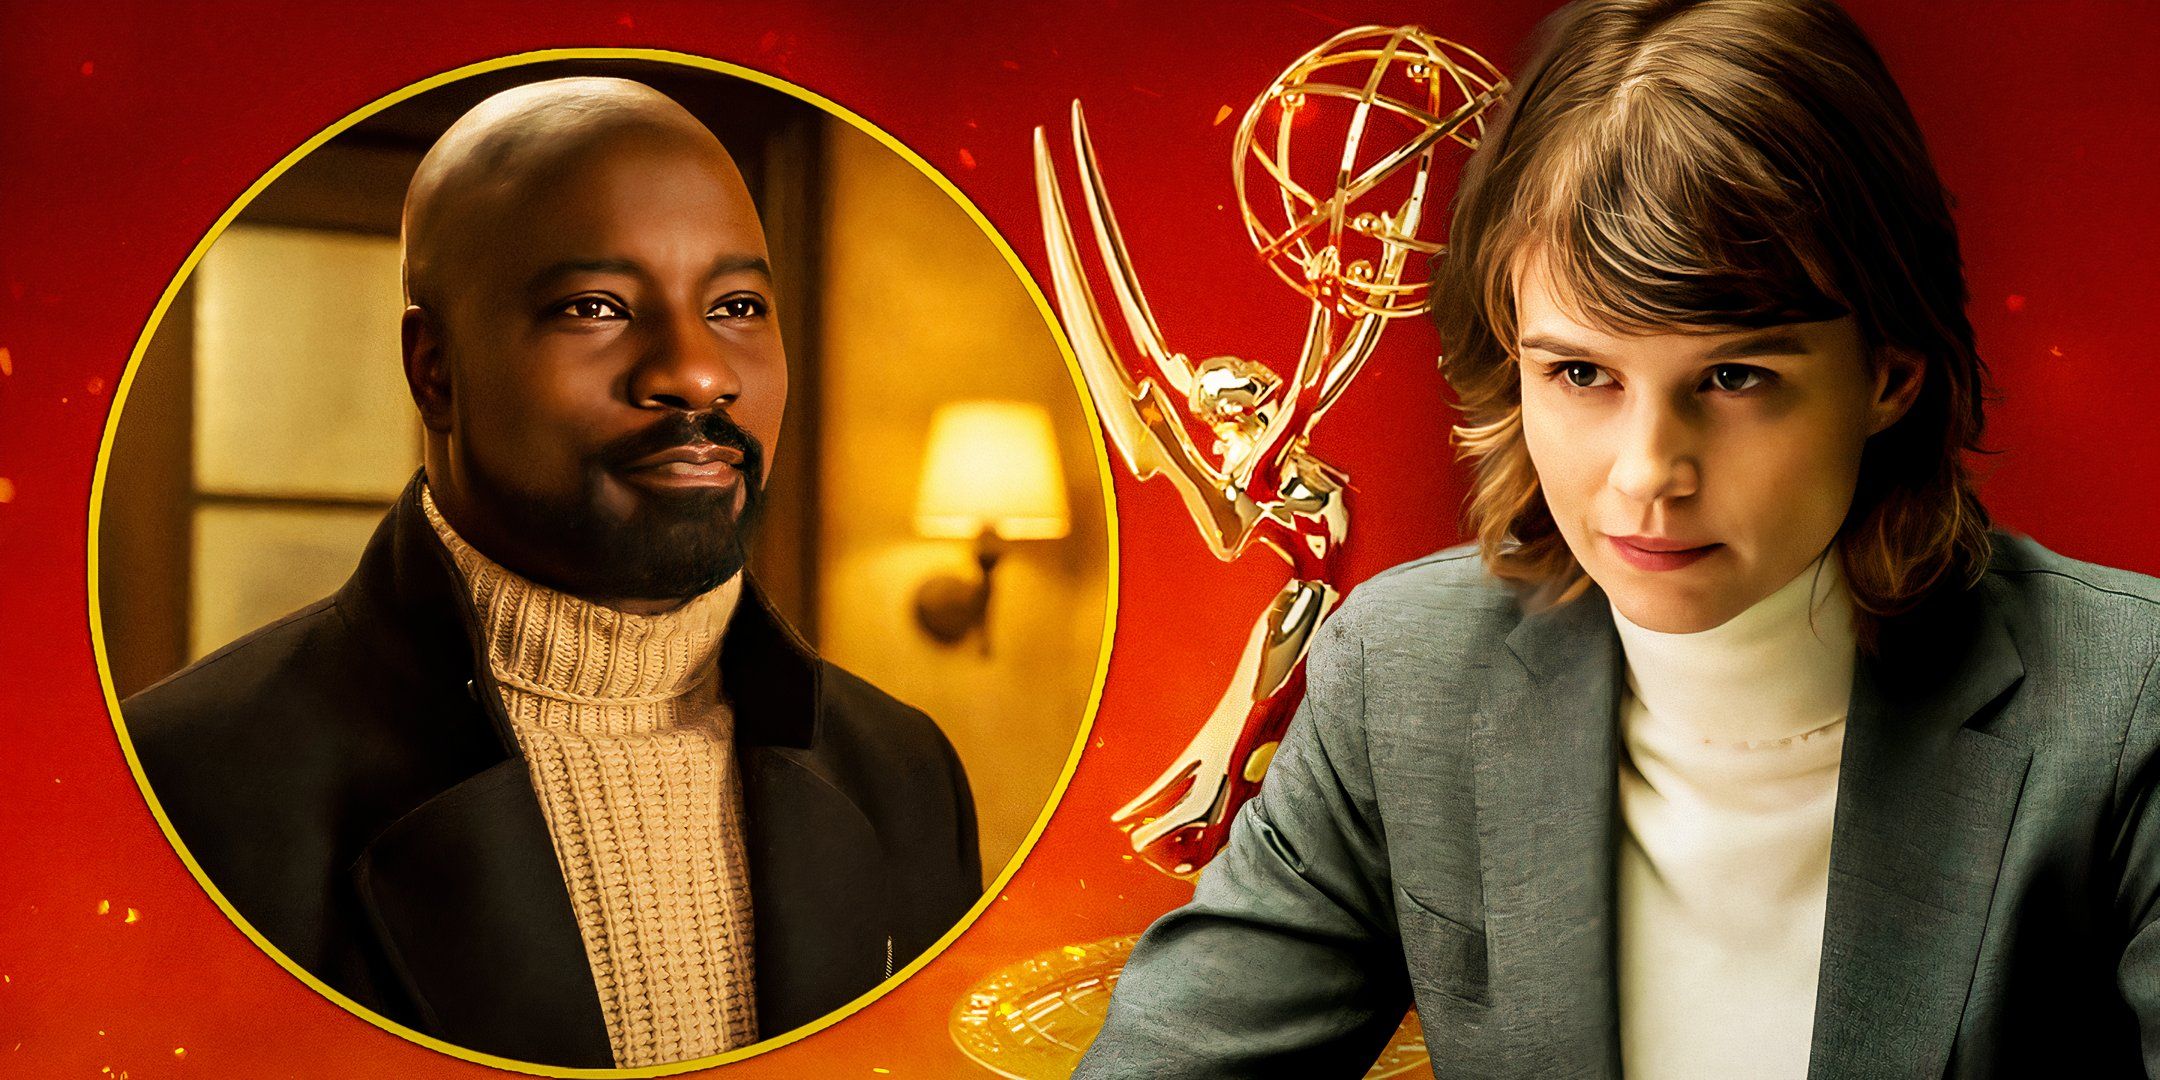 "Me siento decepcionado": la cancelación sorpresiva de Evil y su desaire a los Emmy reciben una respuesta apasionada de la estrella de la temporada 4